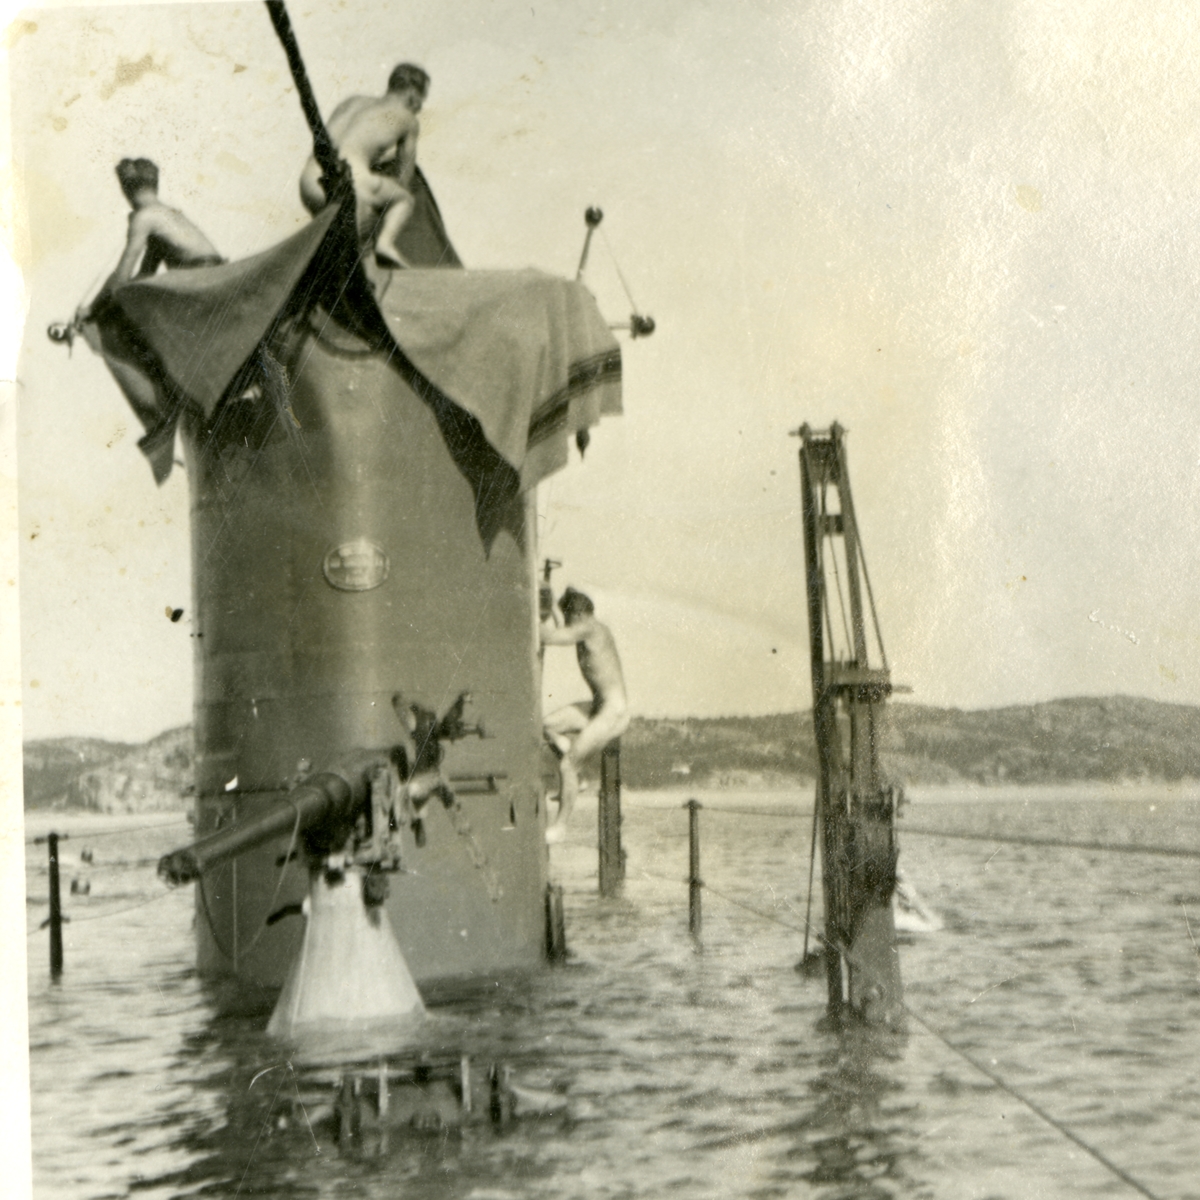 Bilden visar ubåten Najad vars däck ligger under vatten, bara tornet och överbyggnader sticker ut. På tornet syns tre nakna ubåts soldater, den ena håller på att klättra upp på sida av tornet. Runt omkring i vattnet syns fler besättnings män som badar.